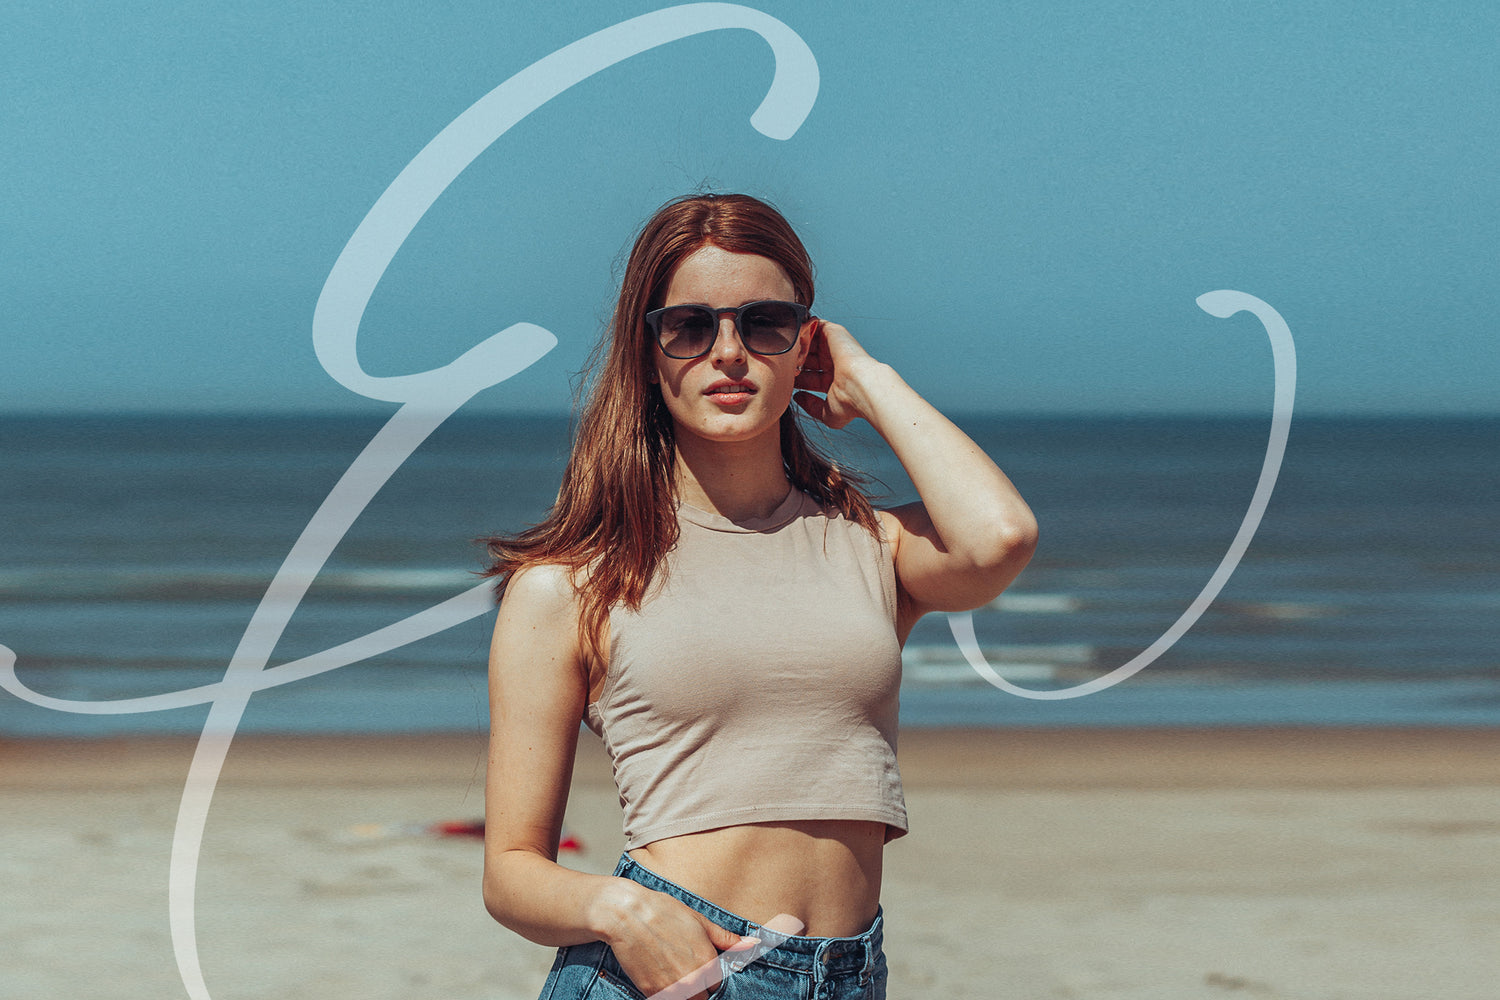 Er staat een mevrouw op het strand met een zwarte zonnebril. Ze gaat met haar hand door haar haar en in de achtergrond is een logo te zien van EveryWear.